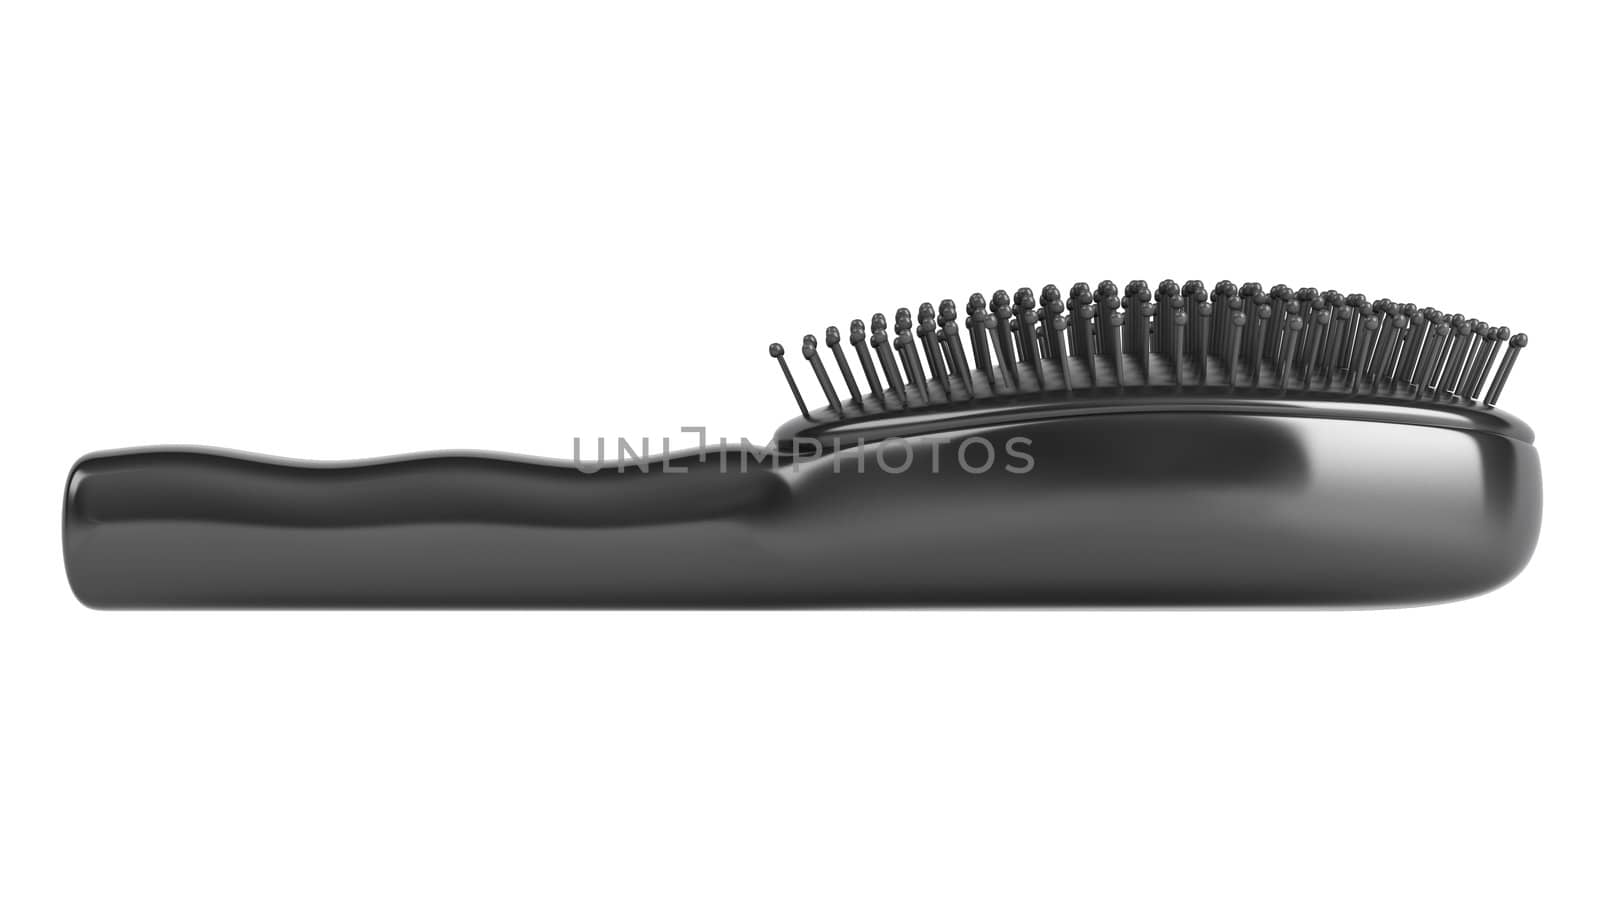 Black hairbrush isolated on white background